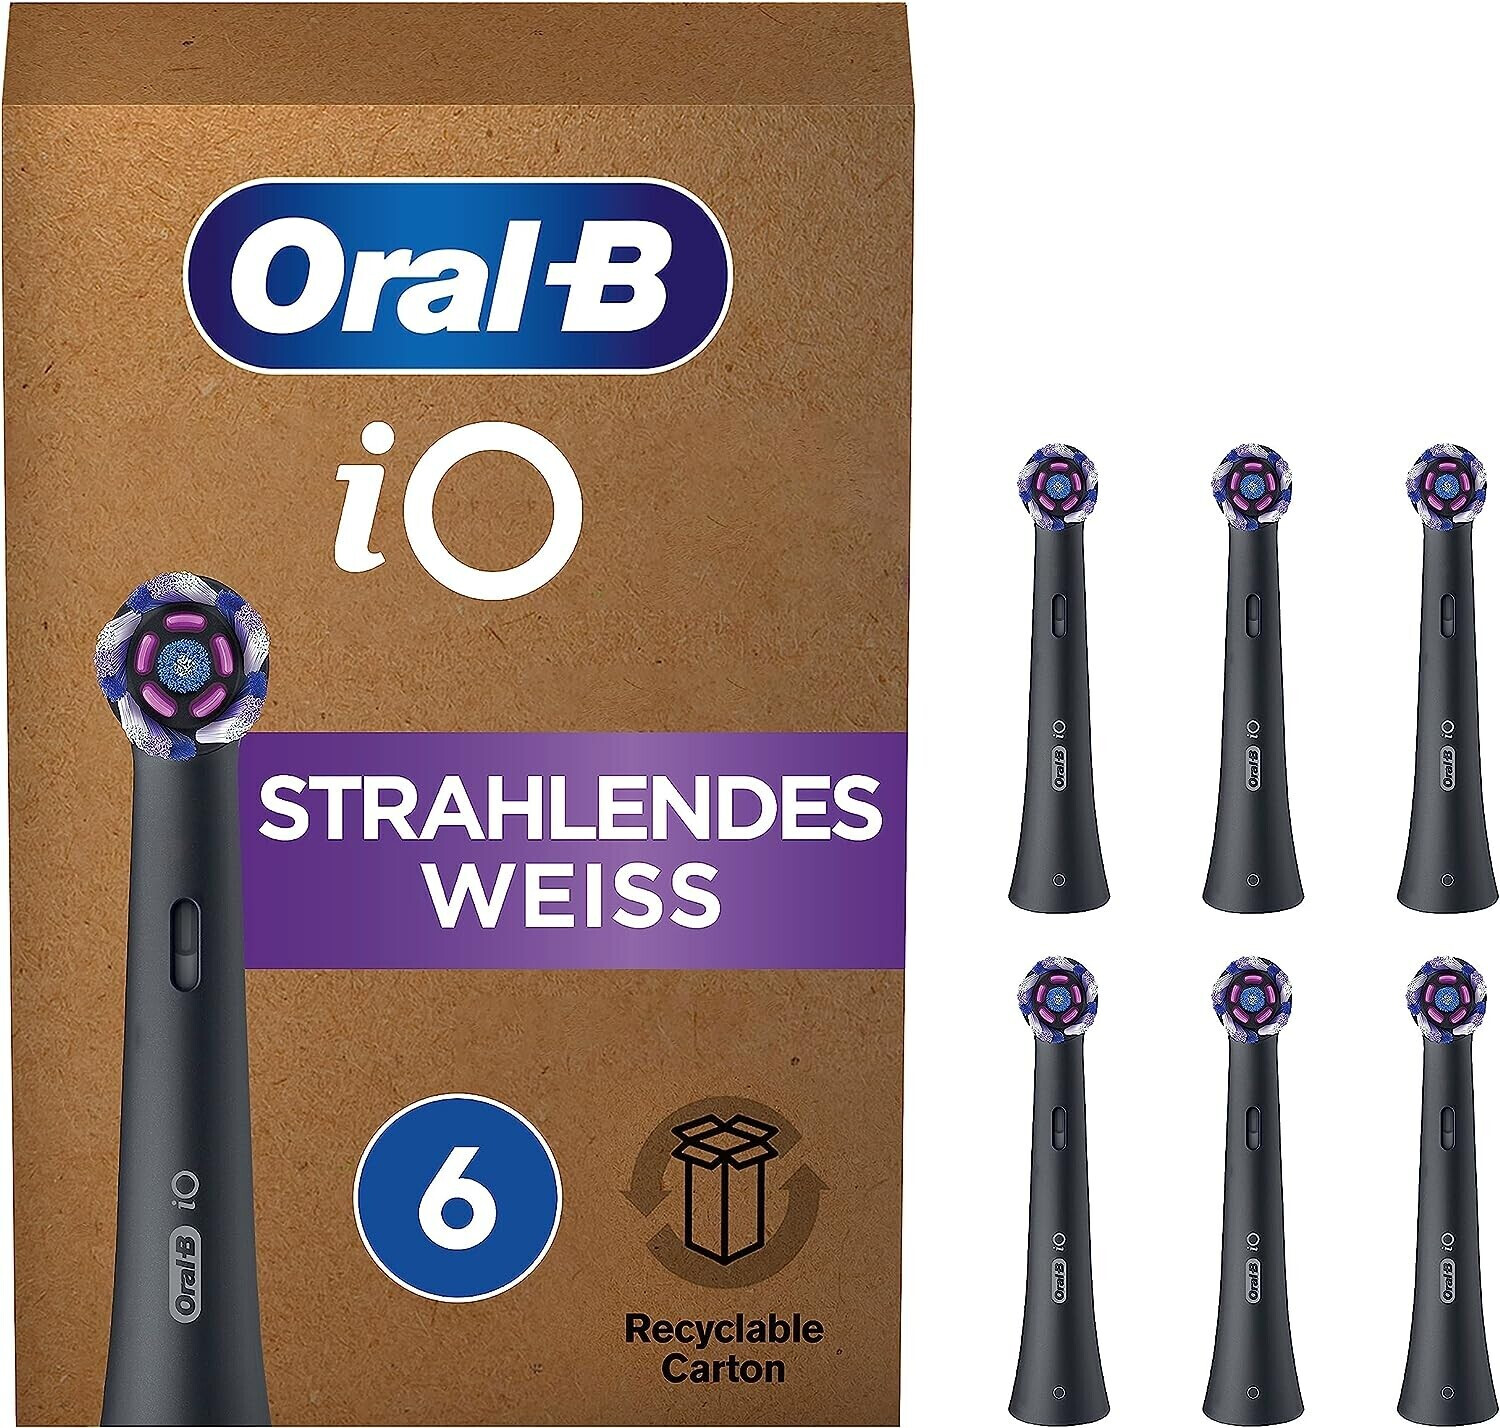 Weiss | Preisvergleich iO bei € 34,81 (6 Strahlendes ab schwarz Oral-B Aufsteckbürsten Stk.)